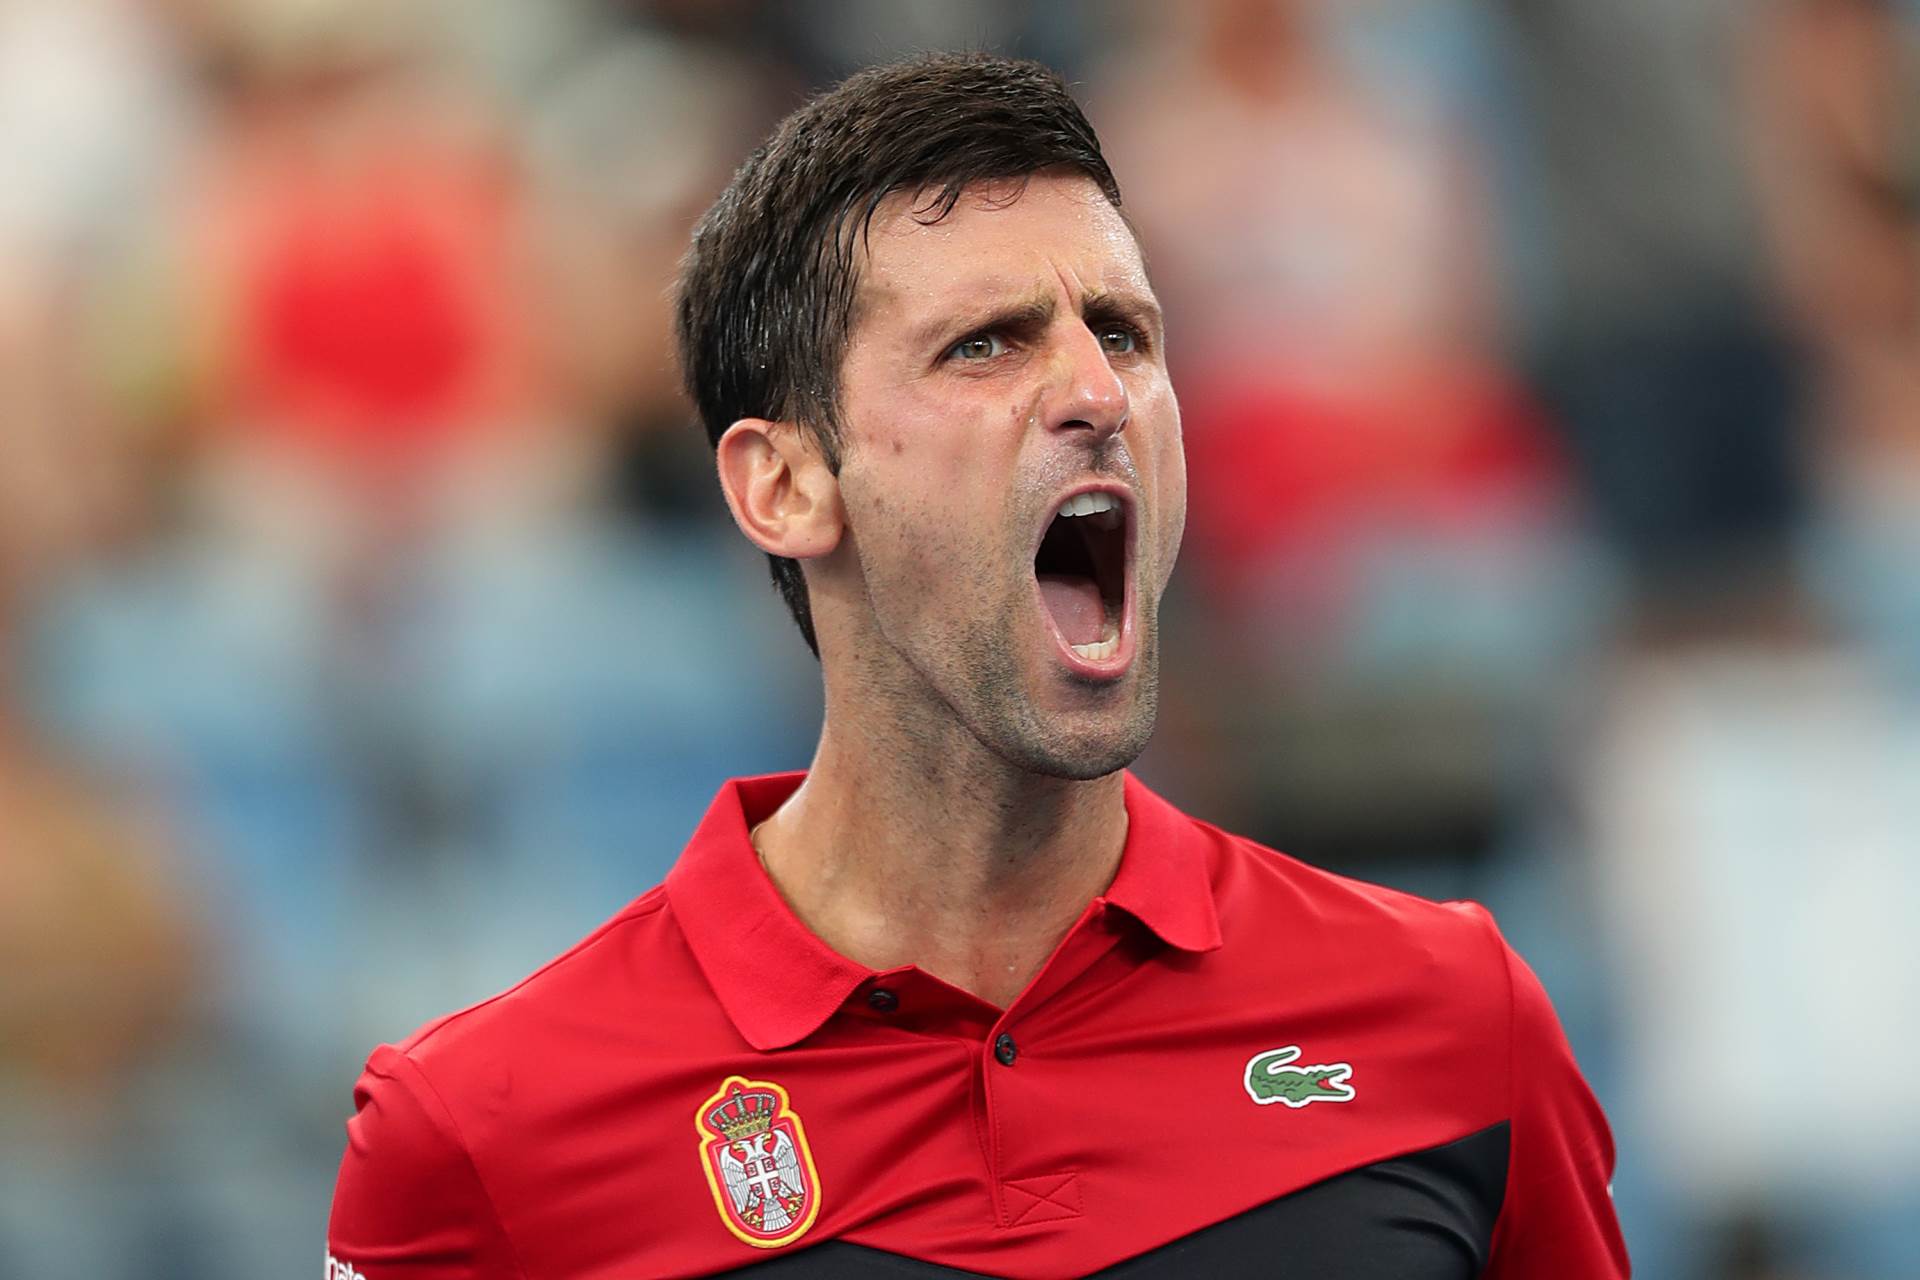  US-Open-protokol-takmicenja-korona-virus-promjena-pravila-Novak-Djokovic-tenis 